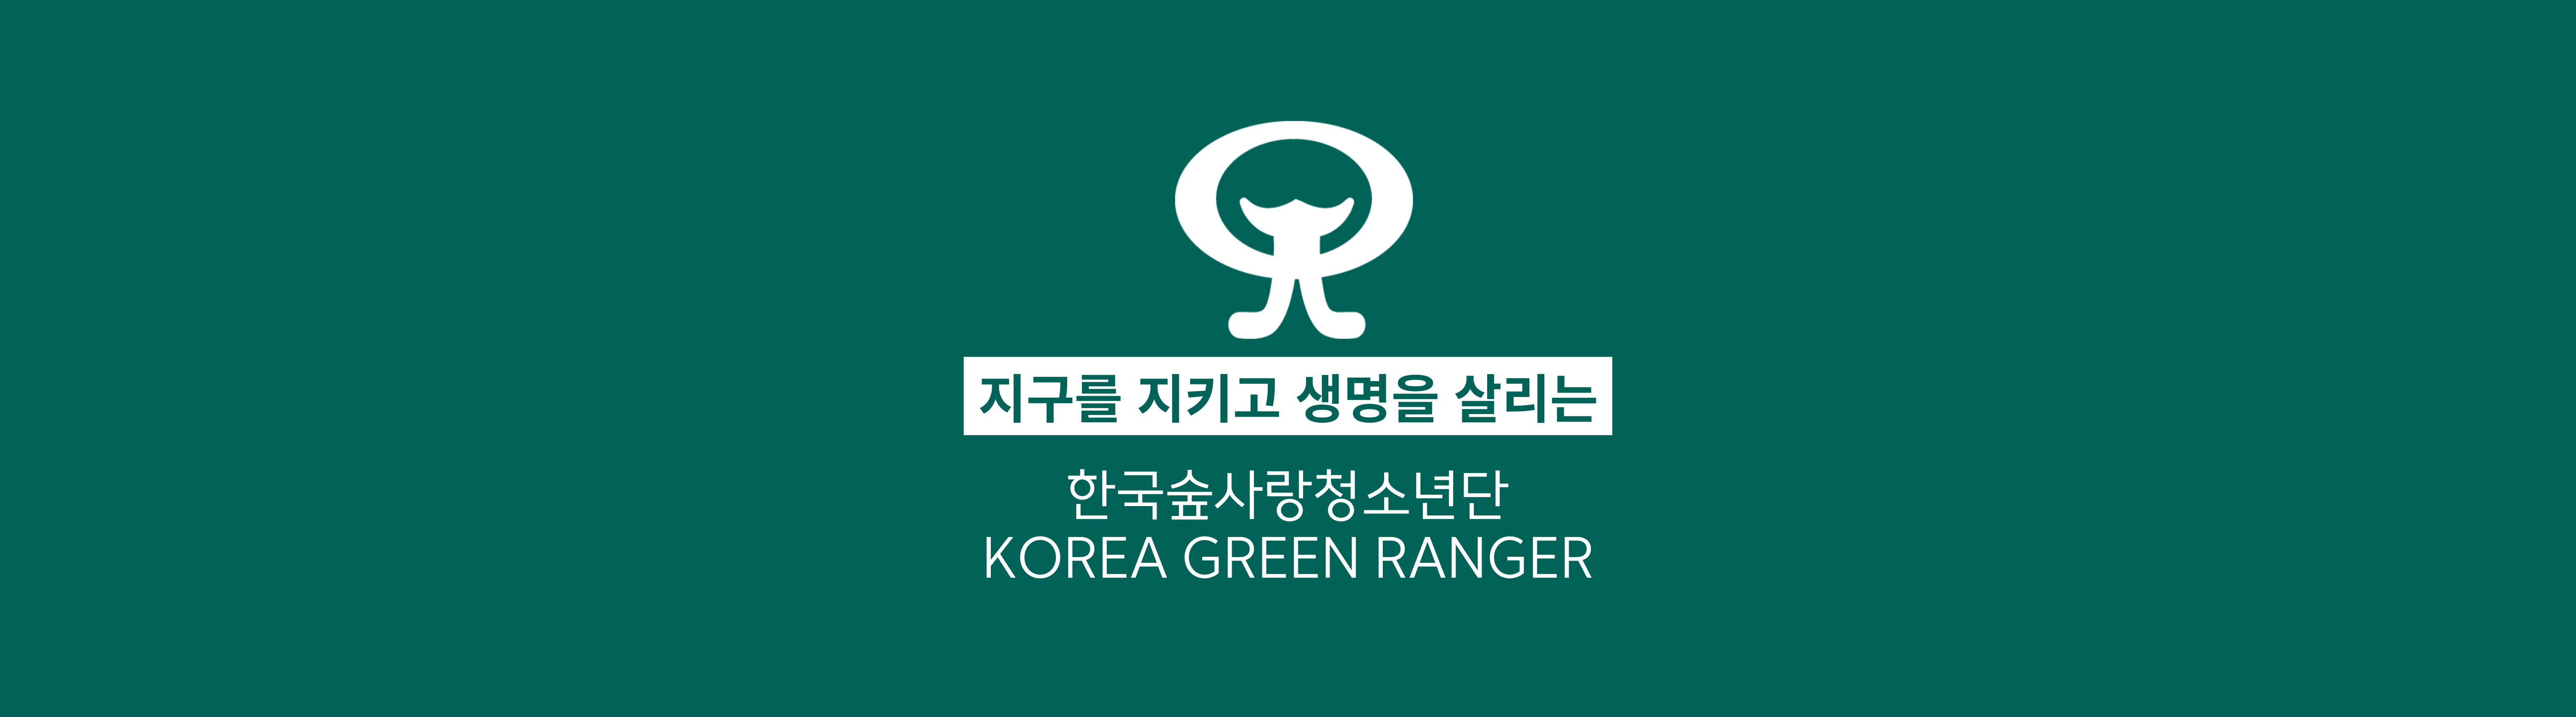 한국숲사랑청소년단